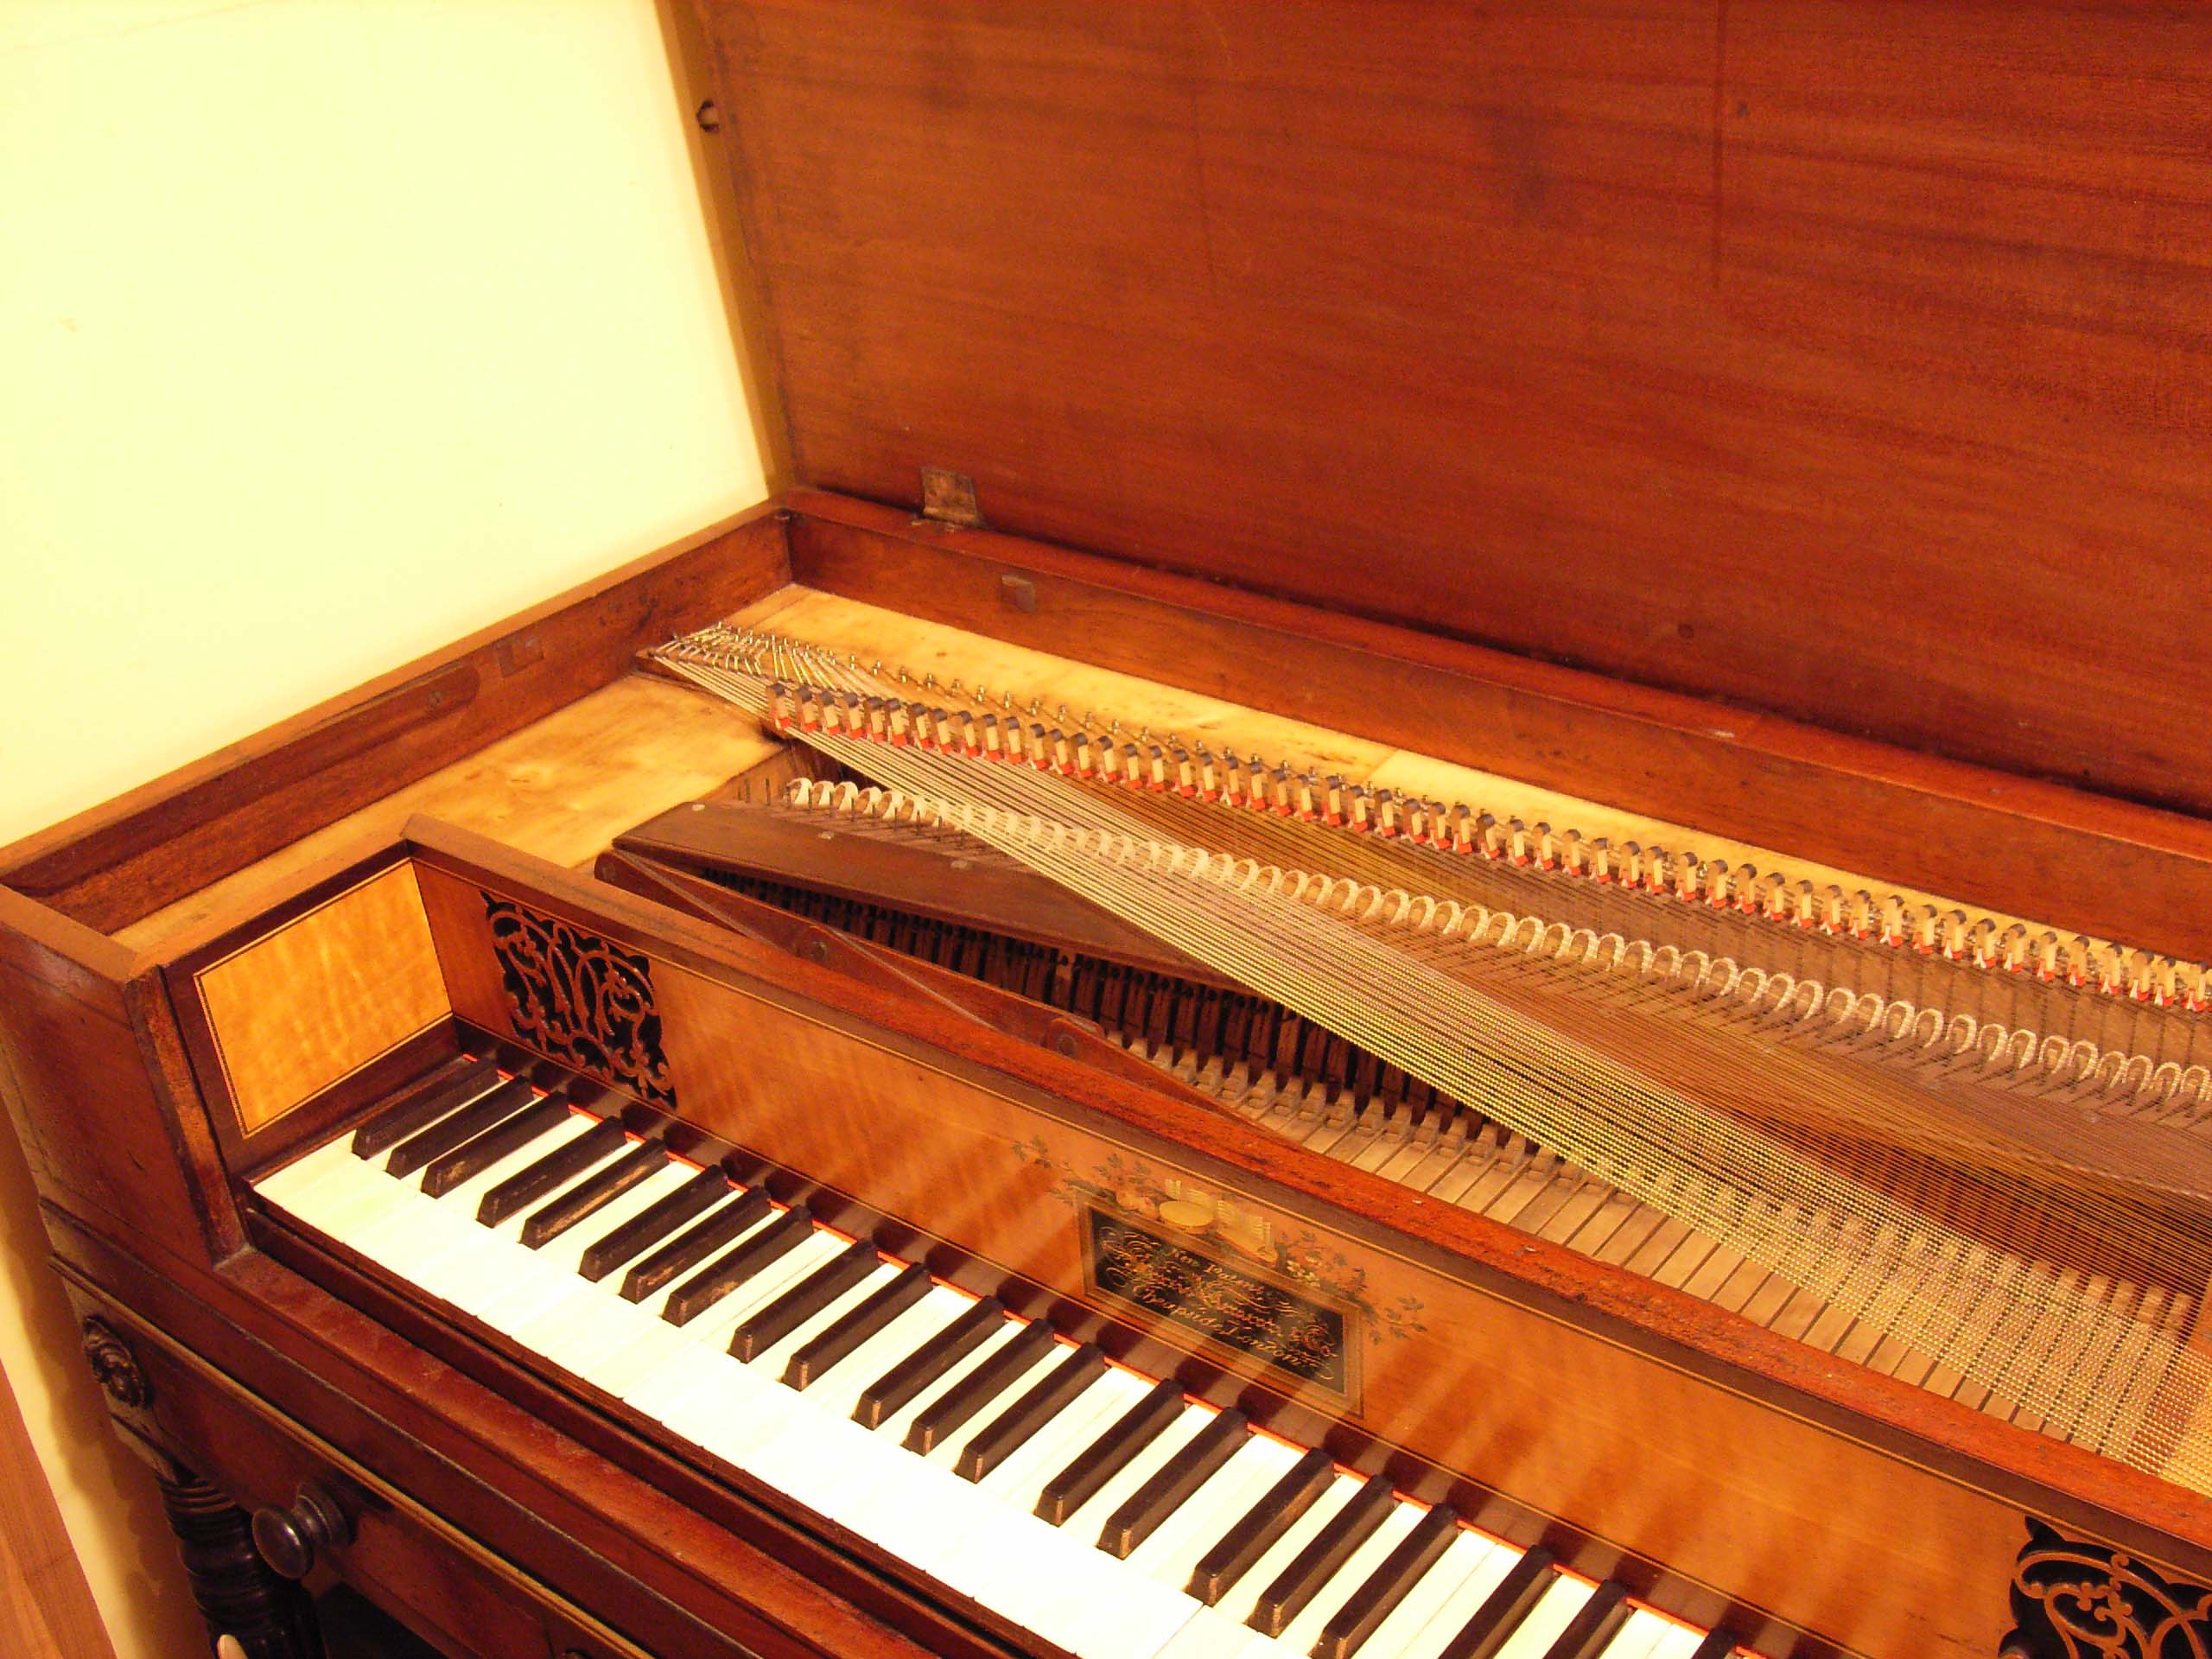 Clementi piano restored (1)